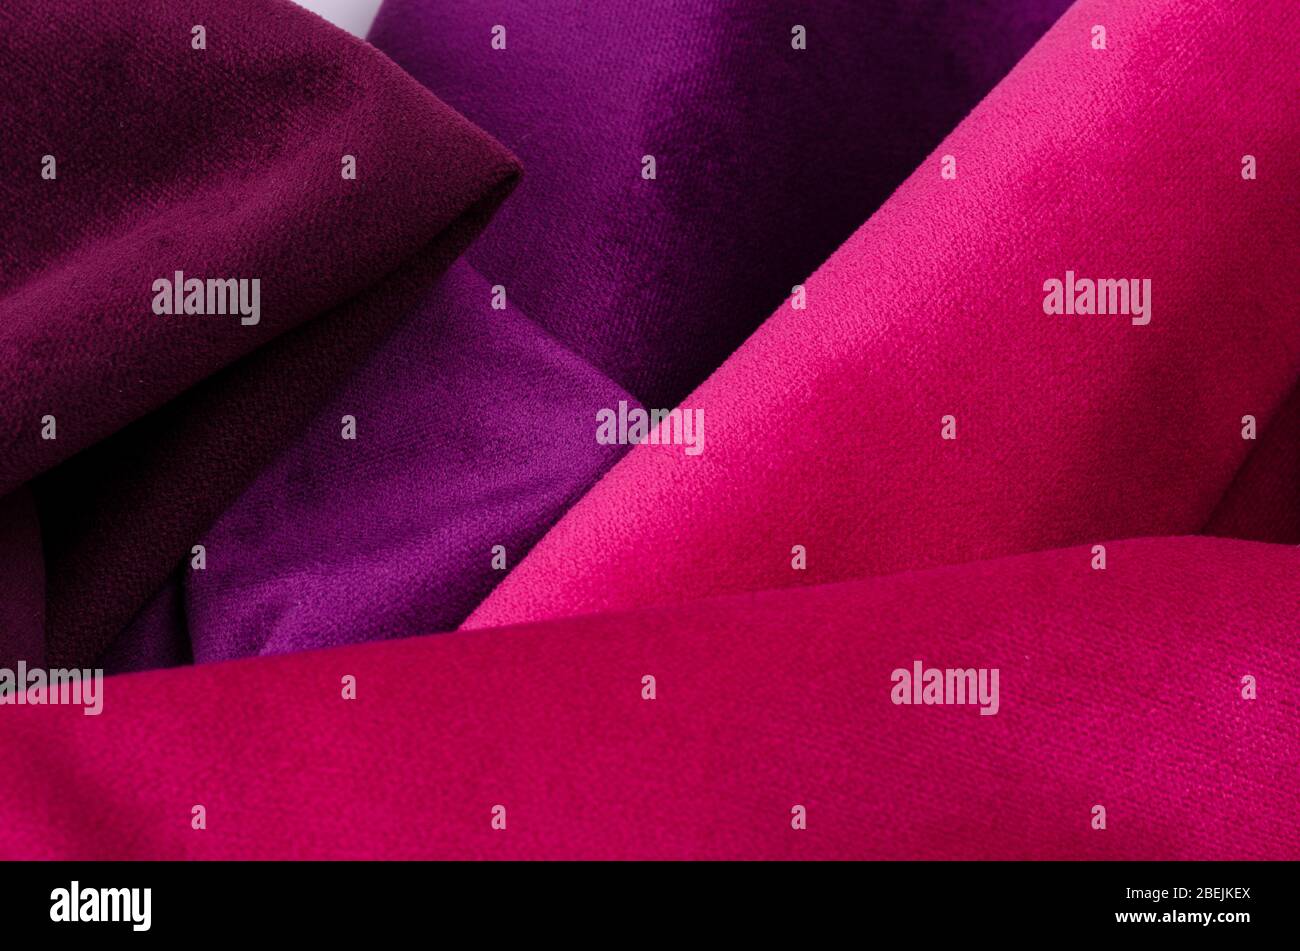 Collection abstraite et colorée d'échantillons de textile en velours aux couleurs rose et violet. Fond de texture de tissu Banque D'Images